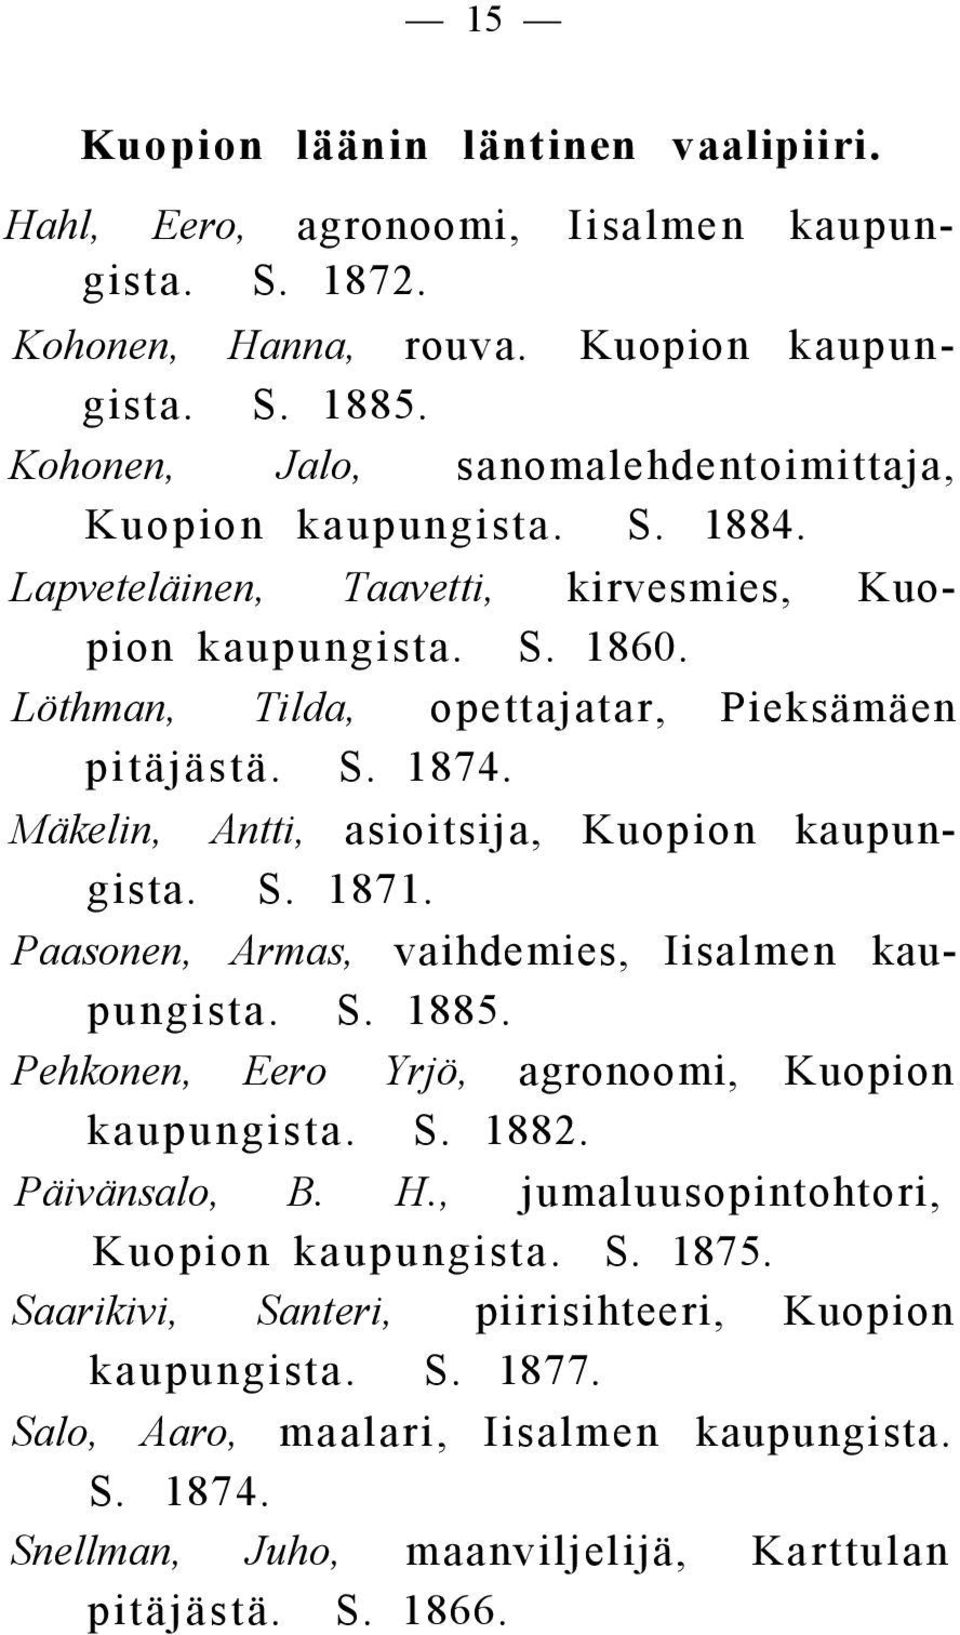 Mäkelin, Antti, asioitsija, Kuopion kaupungista. S. 1871. Paasonen, Armas, vaihdemies, Iisalmen kaupungista. S. 1885. Pehkonen, Eero Yrjö, agronoomi, Kuopion kaupungista. S. 1882.